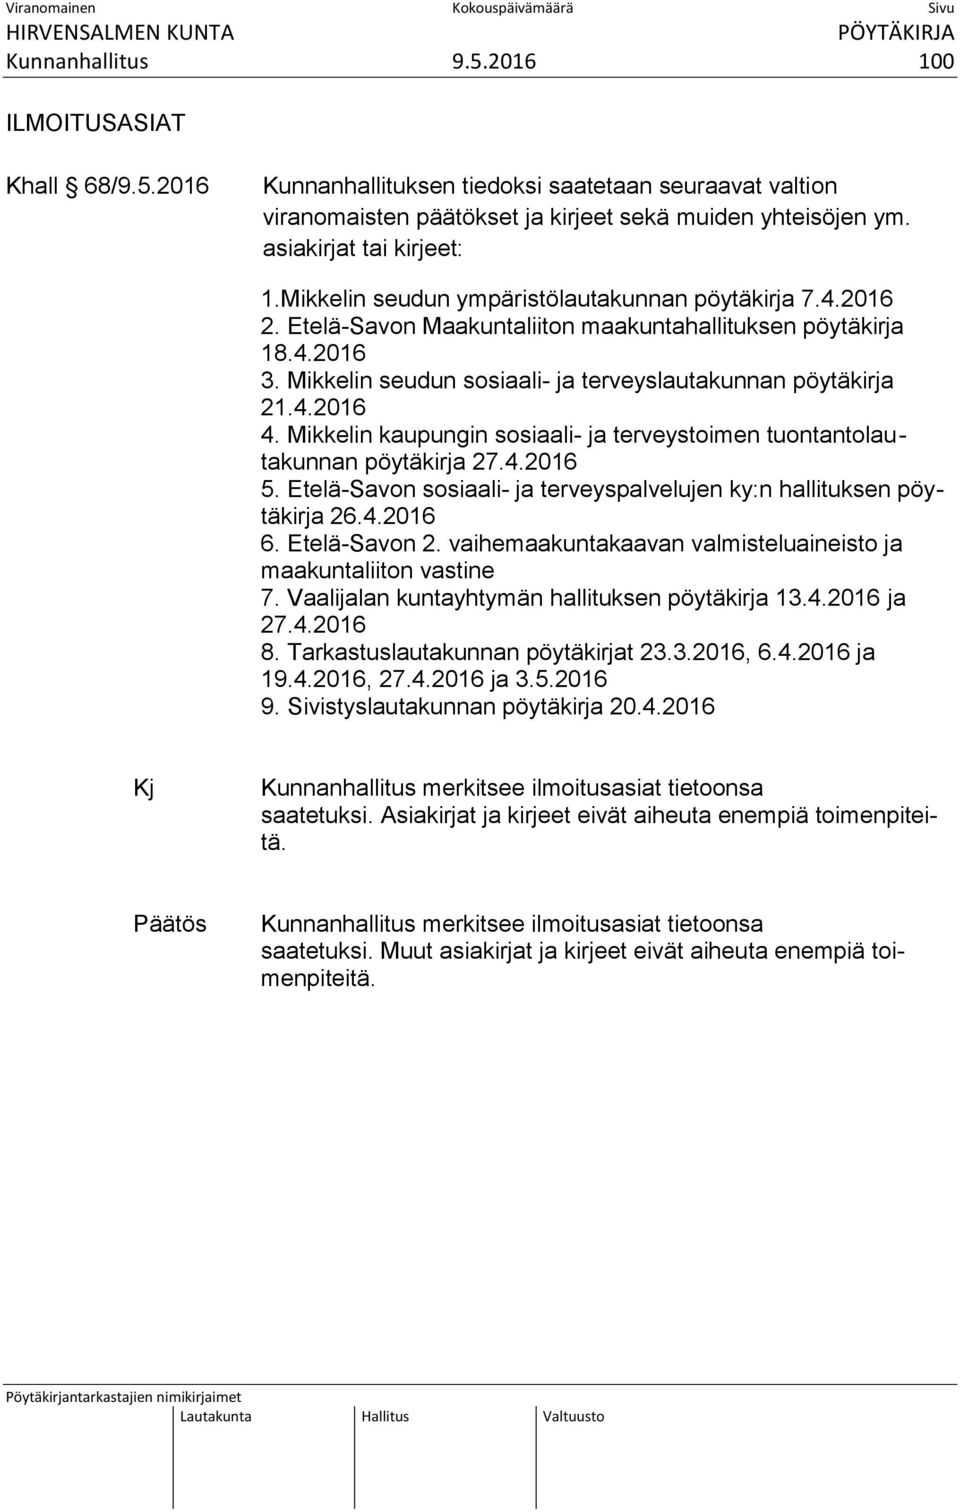 Mikkelin seudun sosiaali- ja terveyslautakunnan pöytäkirja 21.4.2016 4. Mikkelin kaupungin sosiaali- ja terveystoimen tuontantolau - takunnan pöytäkirja 27.4.2016 5.